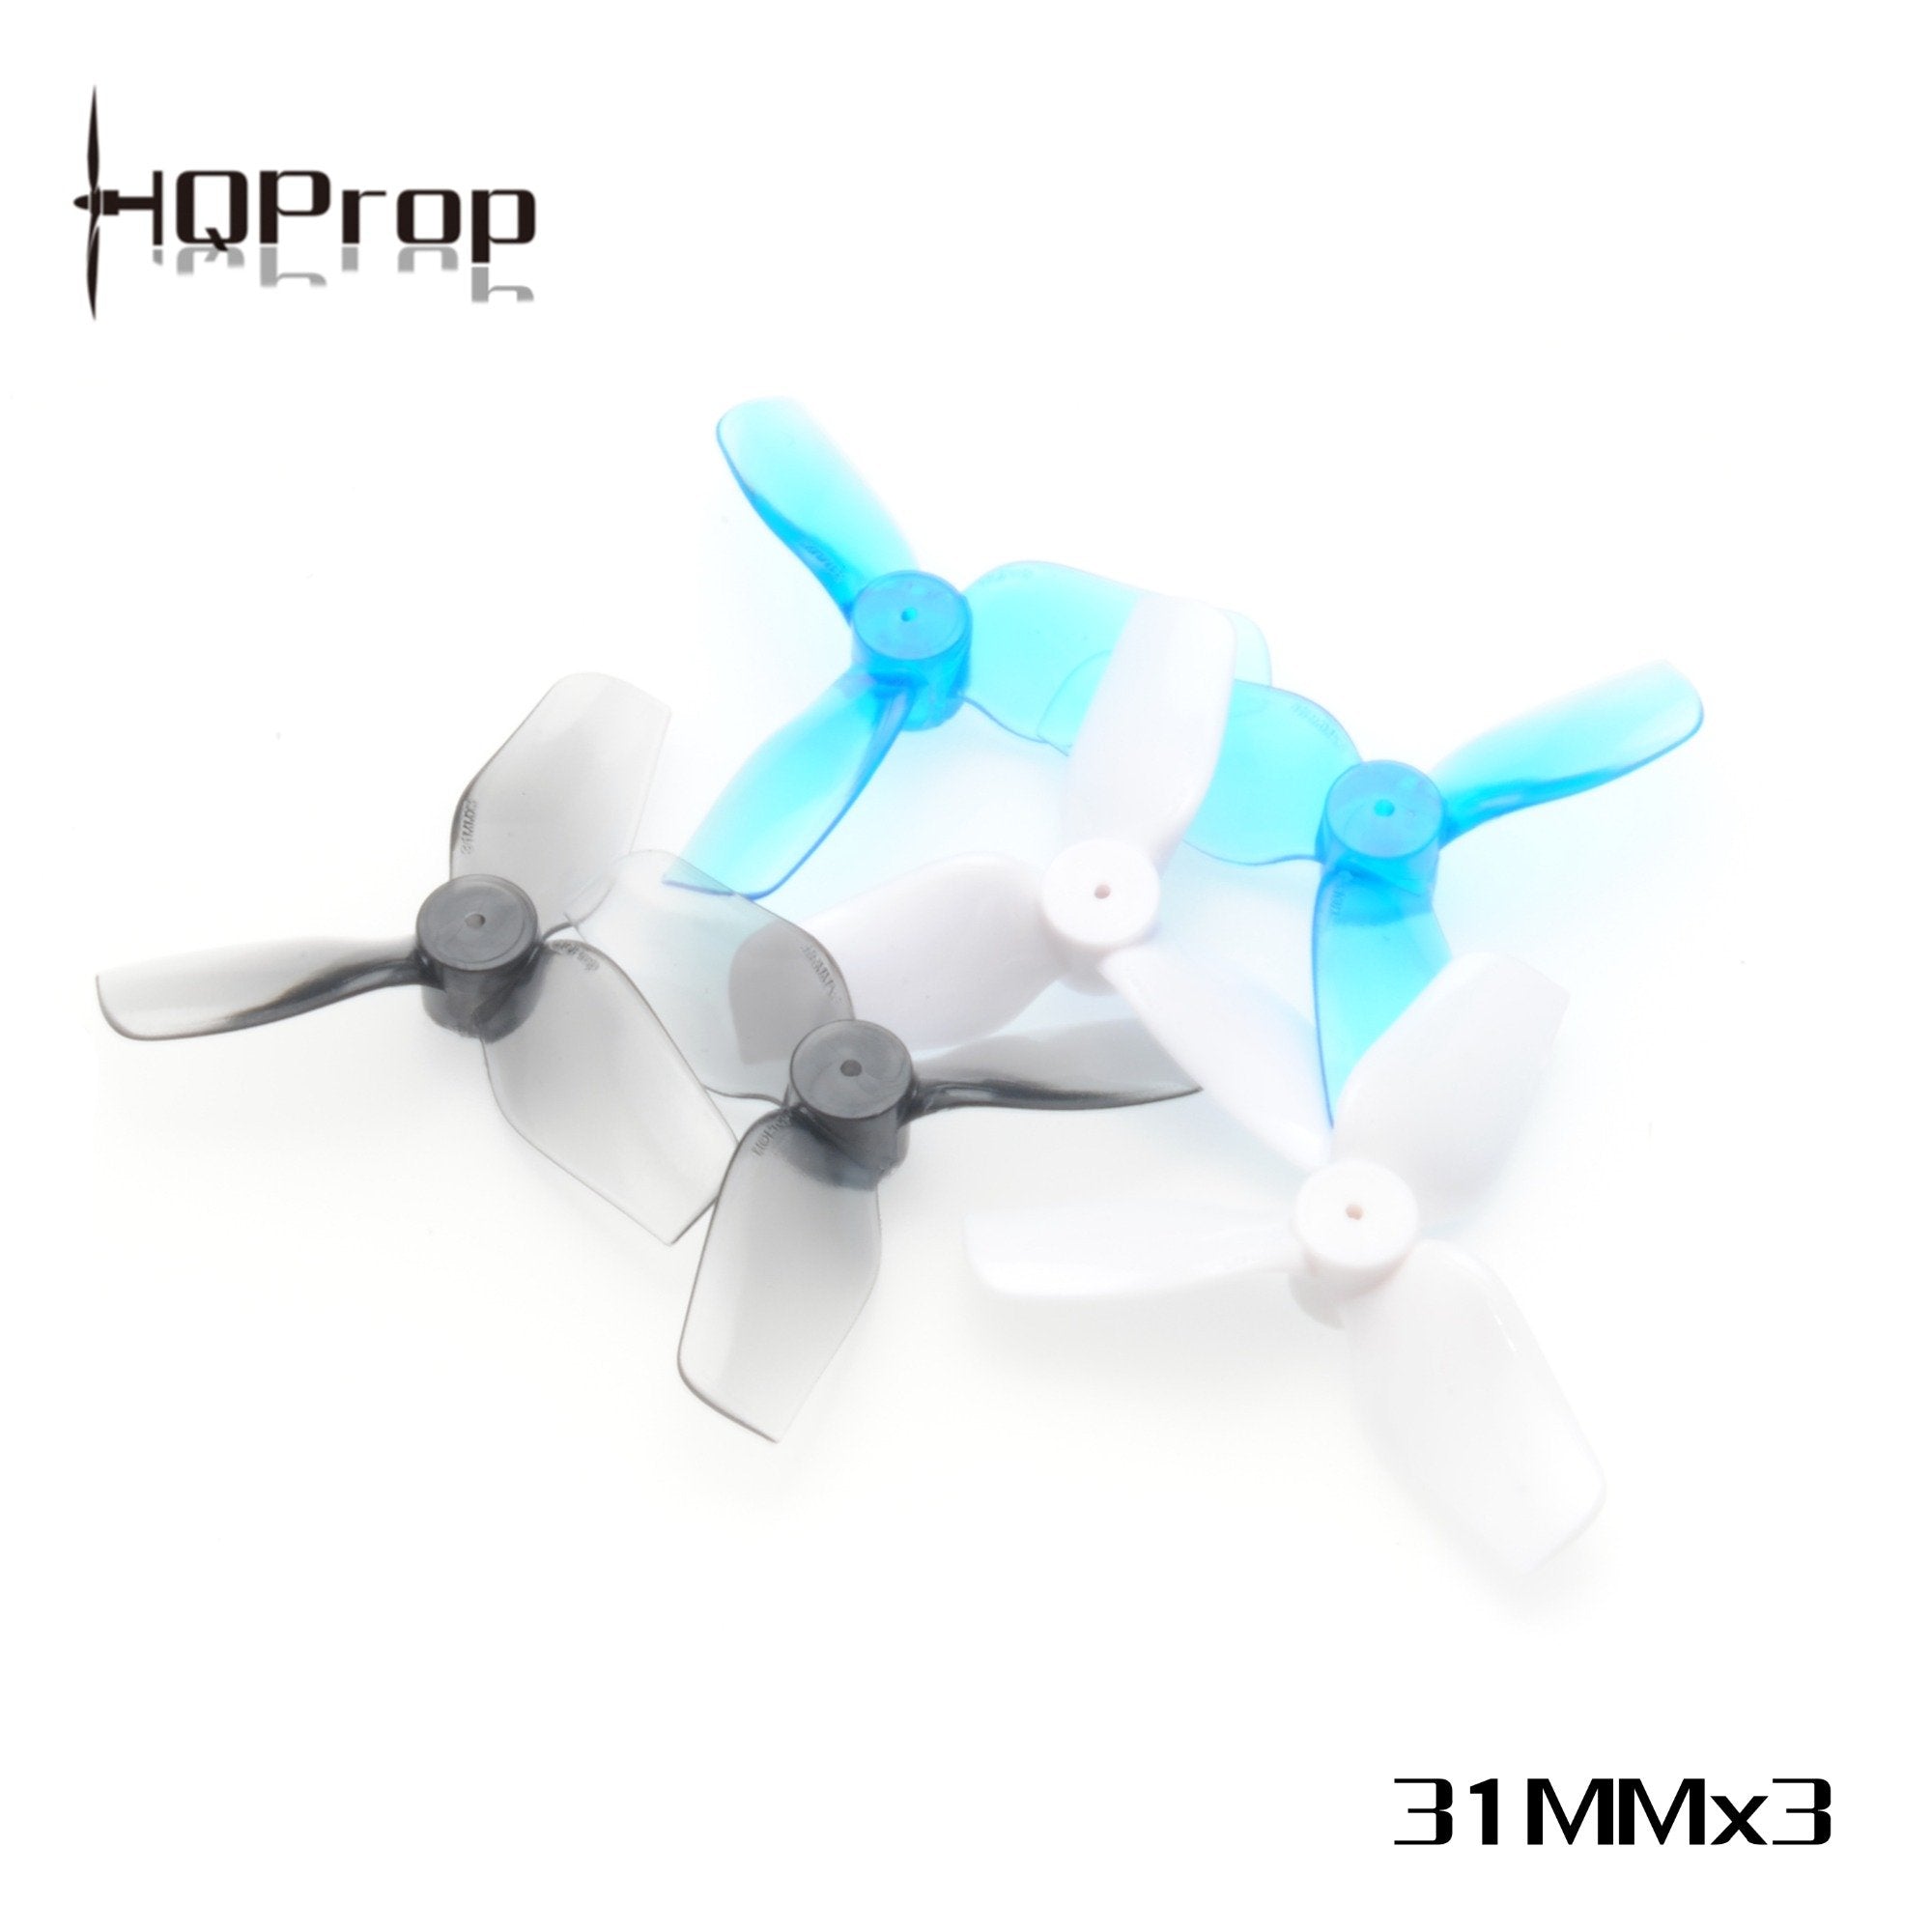 HQProp Micro Whoop Prop 31MMX3 Propellers 1 - HQProp - Drone Authority